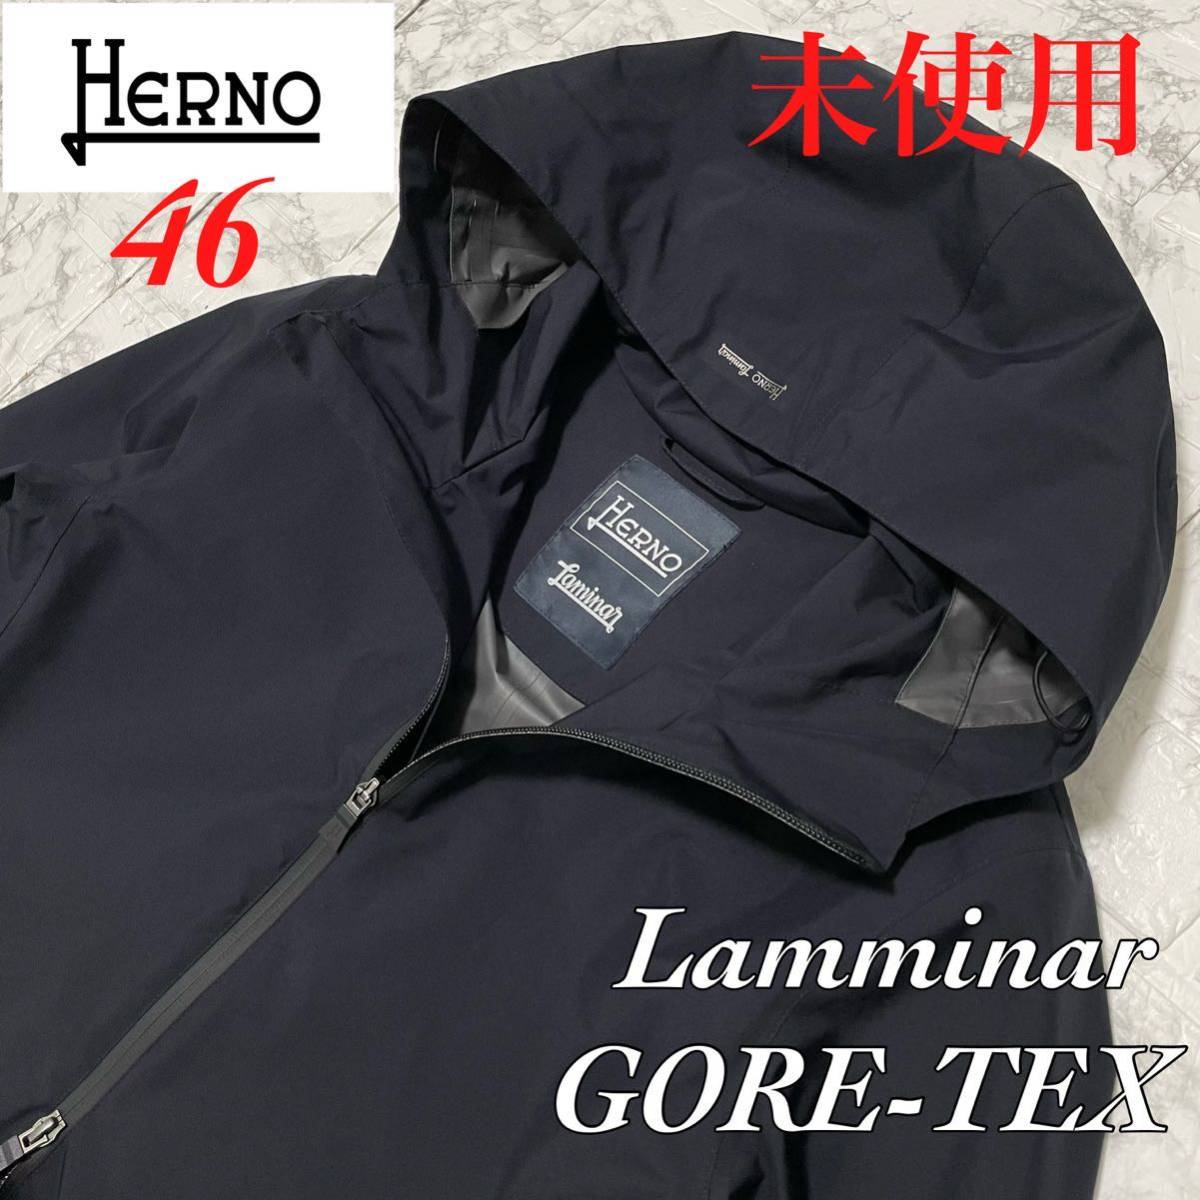 HERNO ヘルノ Laminarラミナー ゴアテックス GORE-TEX